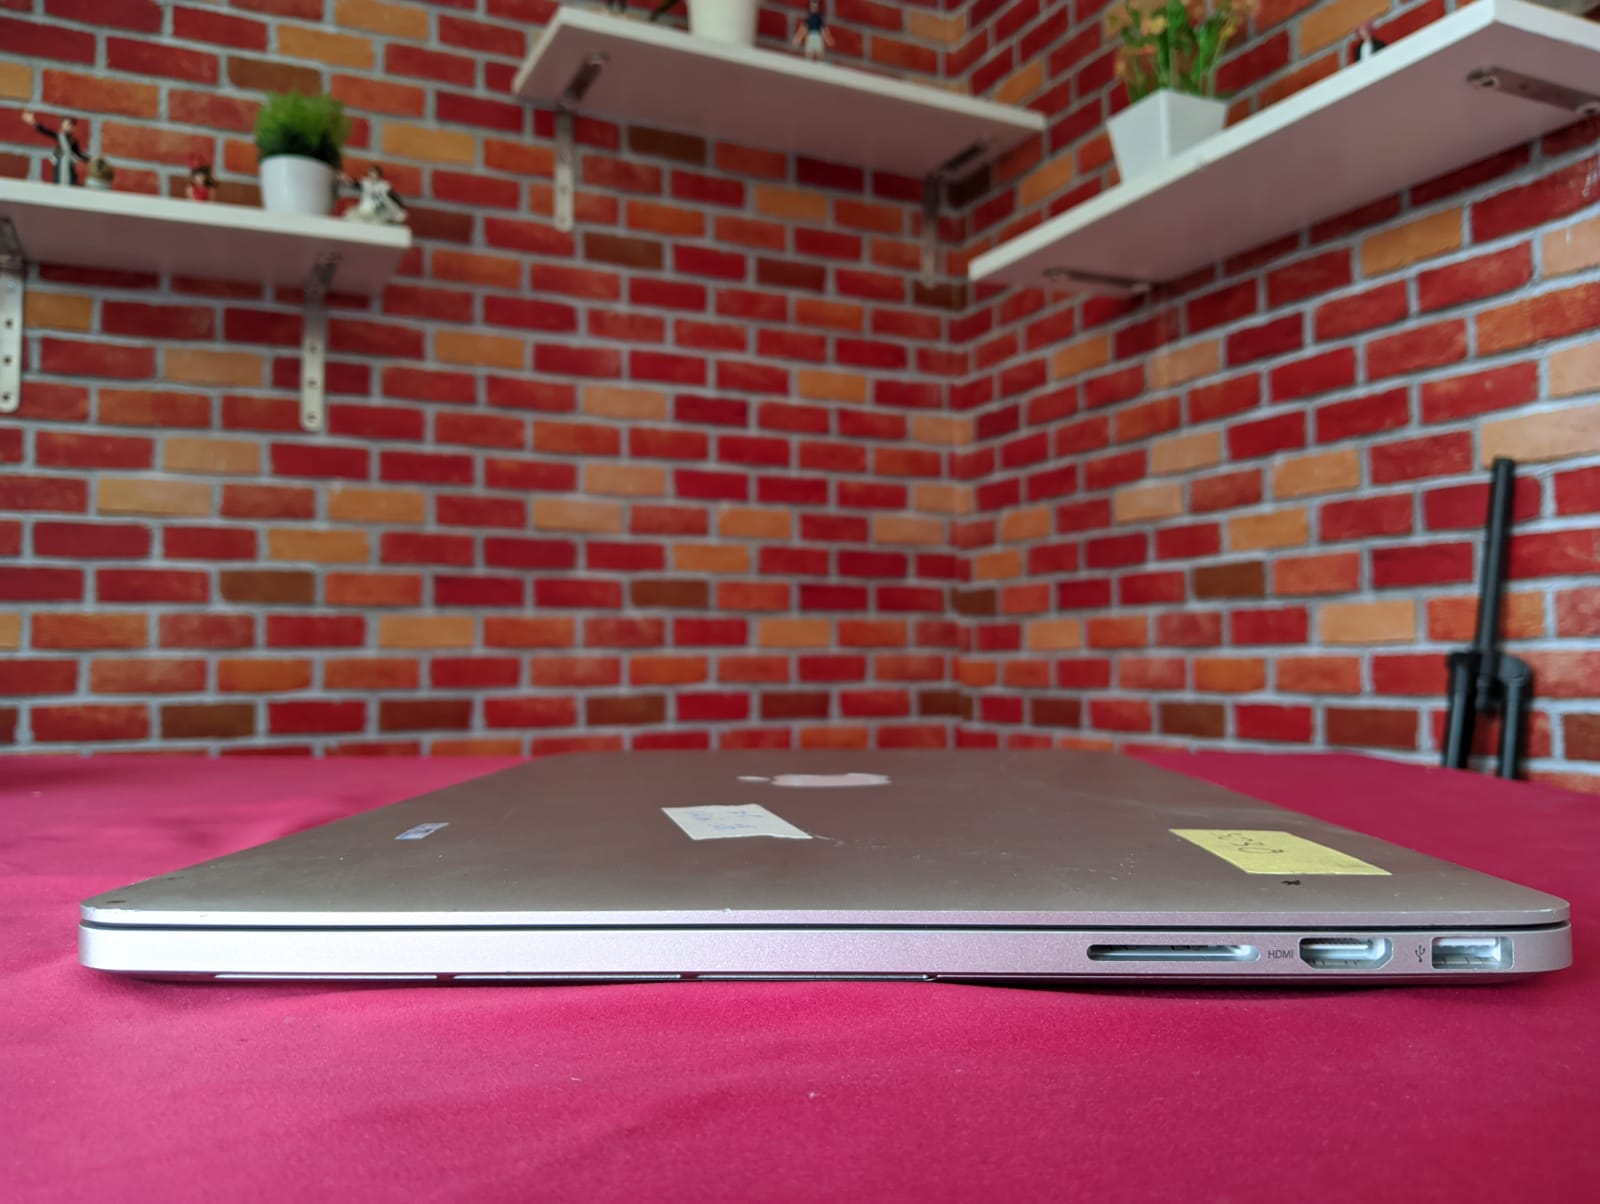 Macbook Pro 2014 15 inch